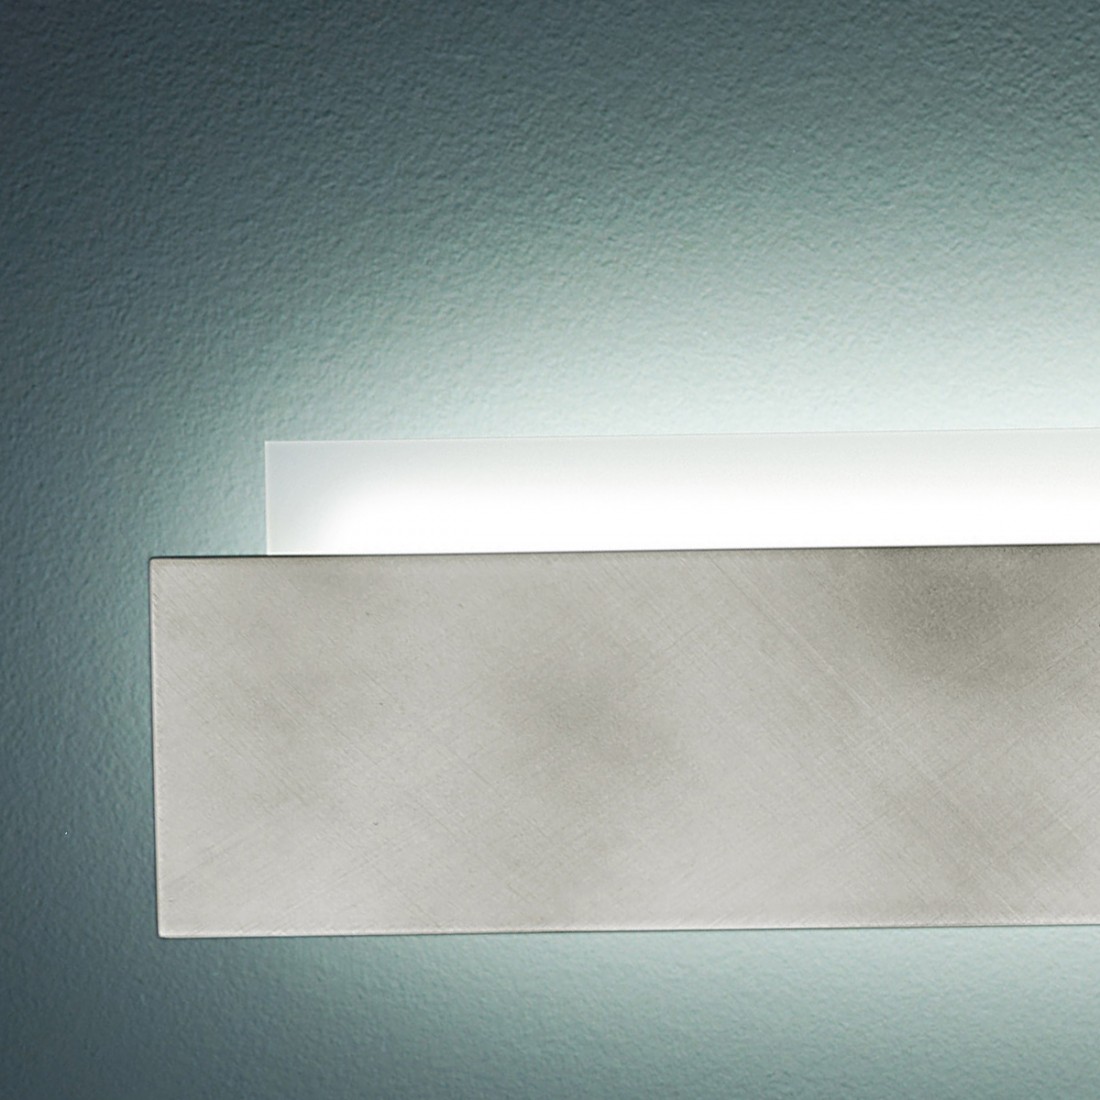 Lámpara de techo rectangular moderna con módulo LED integrado, luz cálida